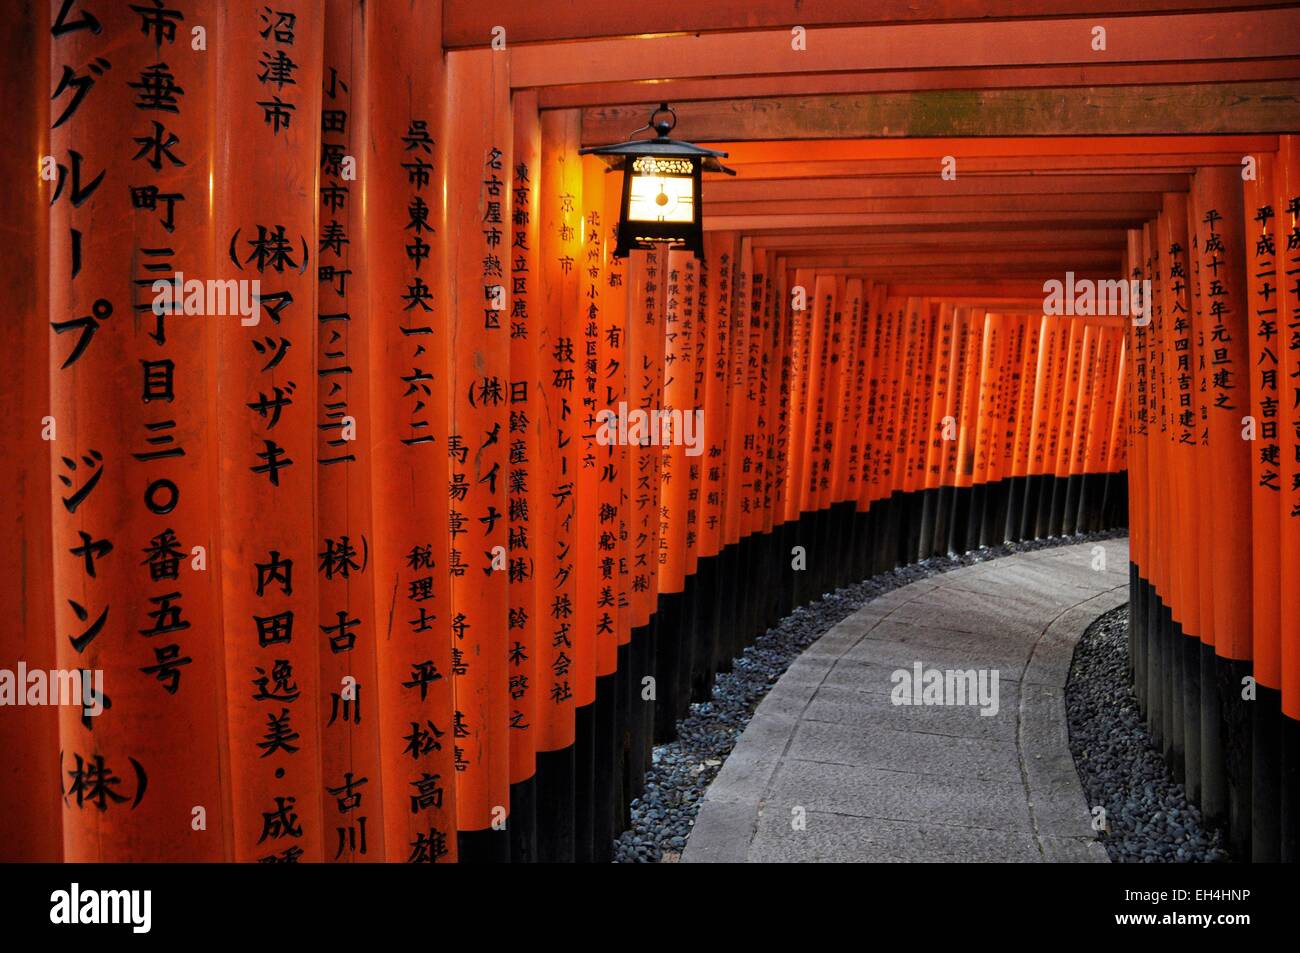 Le Japon, Honshu, Kinki, Kyoto, Fushimi Inari Taisha torii vermillon, des milliers de portes dans le sanctuaire Banque D'Images